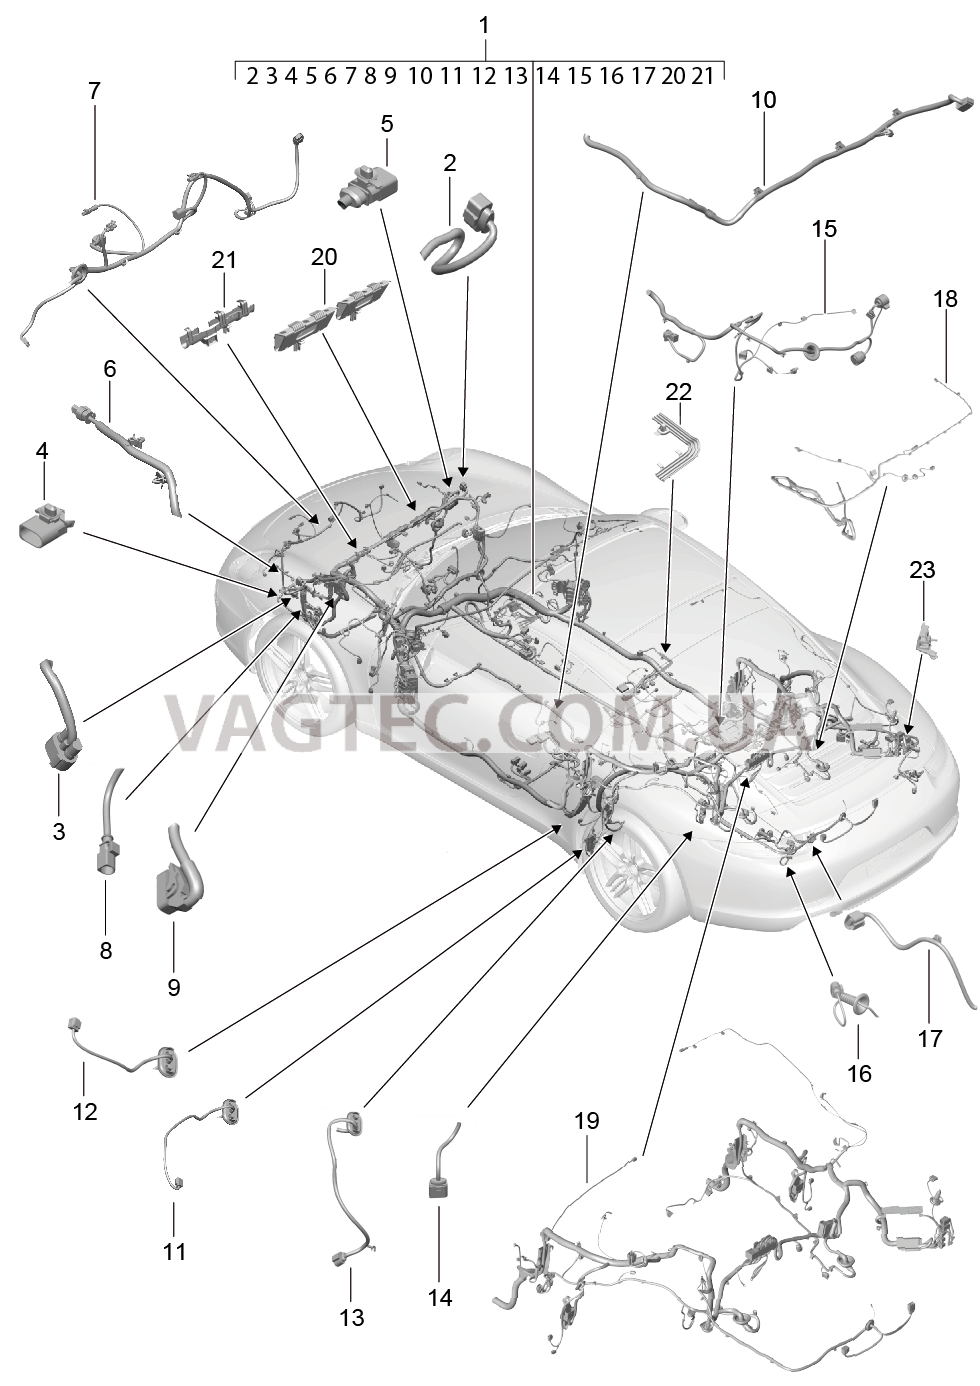 902-010 Жгуты проводов, Салон, и, Сегмент детали для PORSCHE 911.Carrera 2012-2016